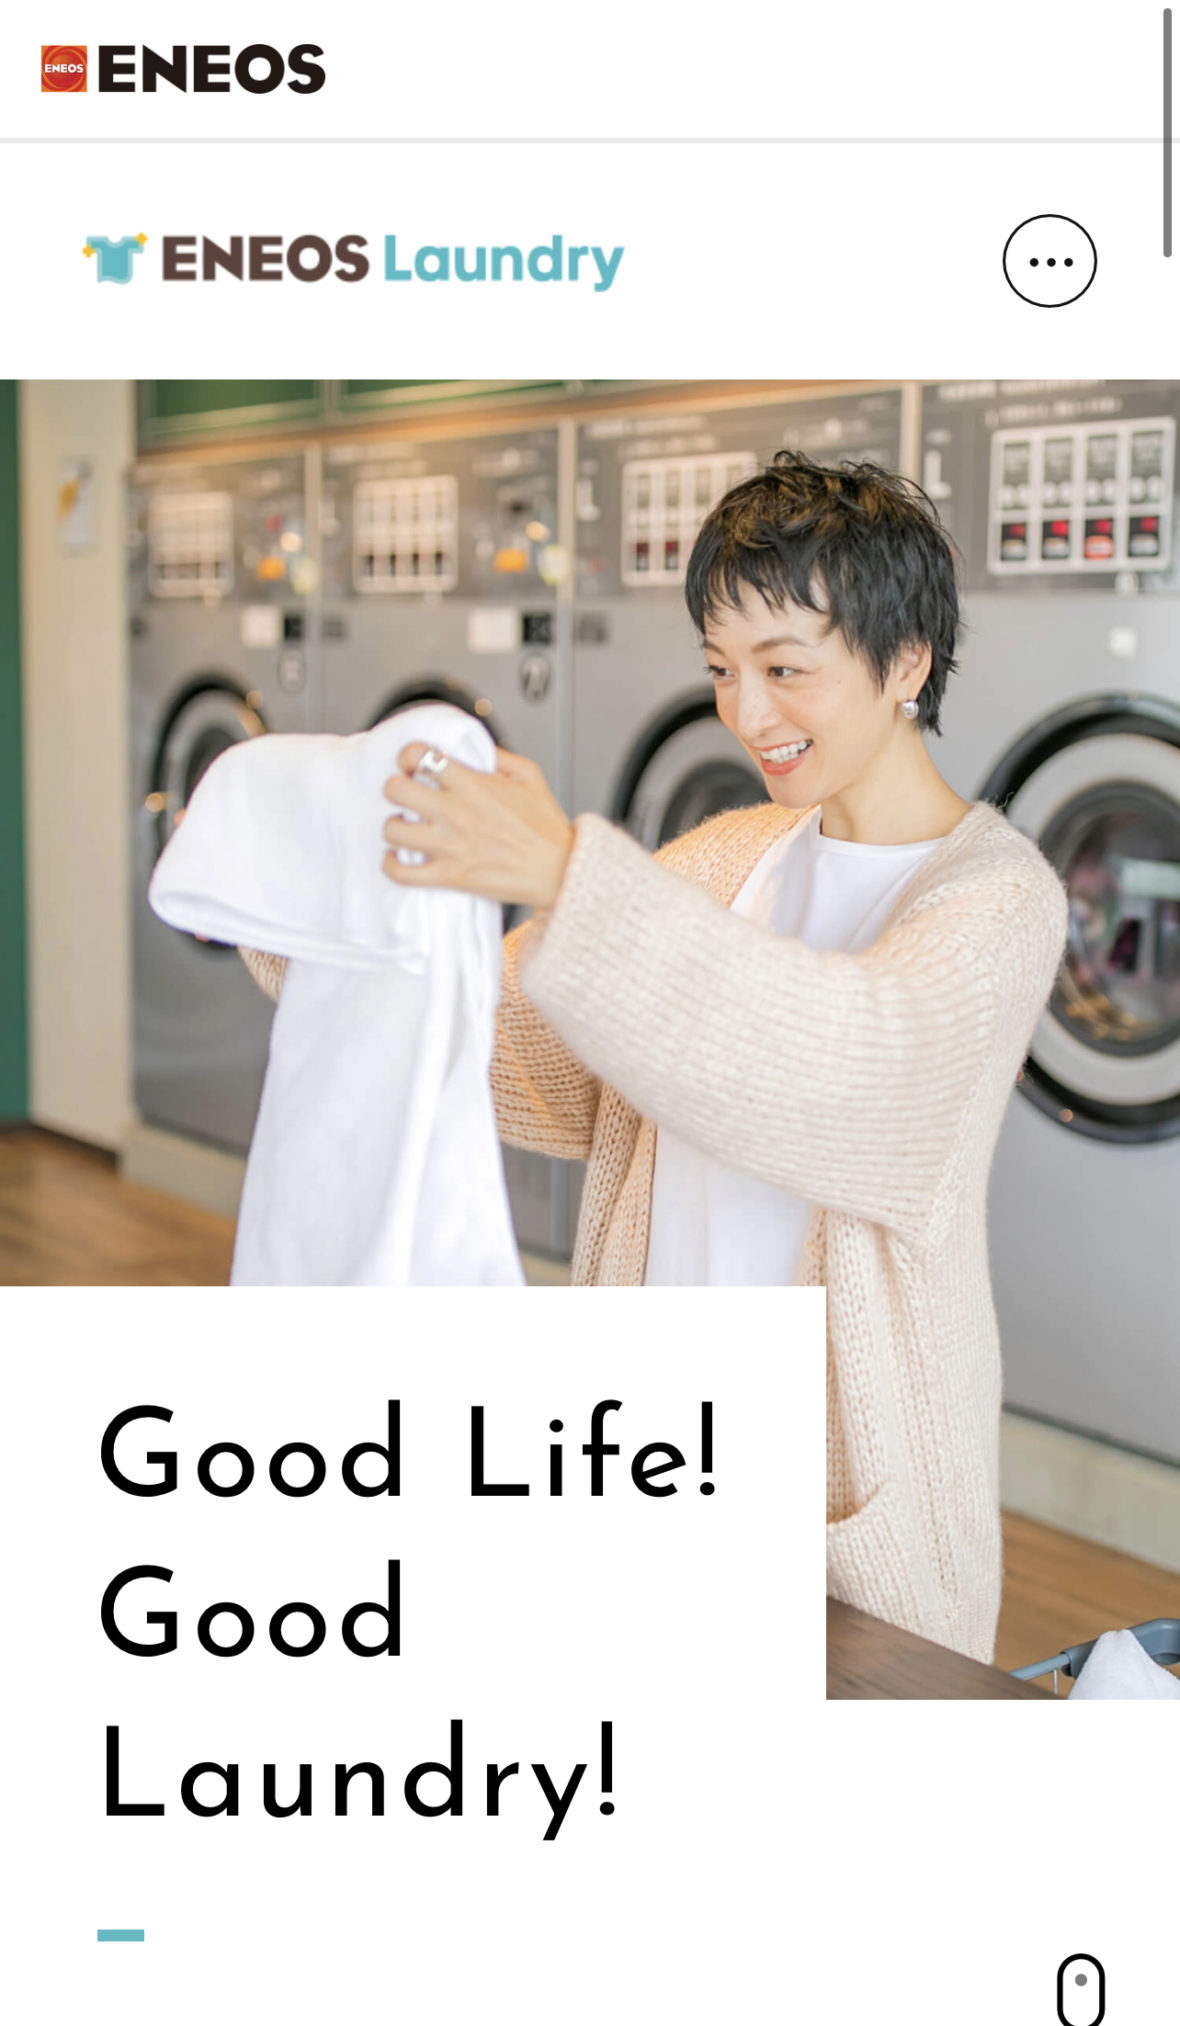 ENEOS Laundry 「Good Life! Good Laundry!」特設サイトビジュアルを担当いたしました。